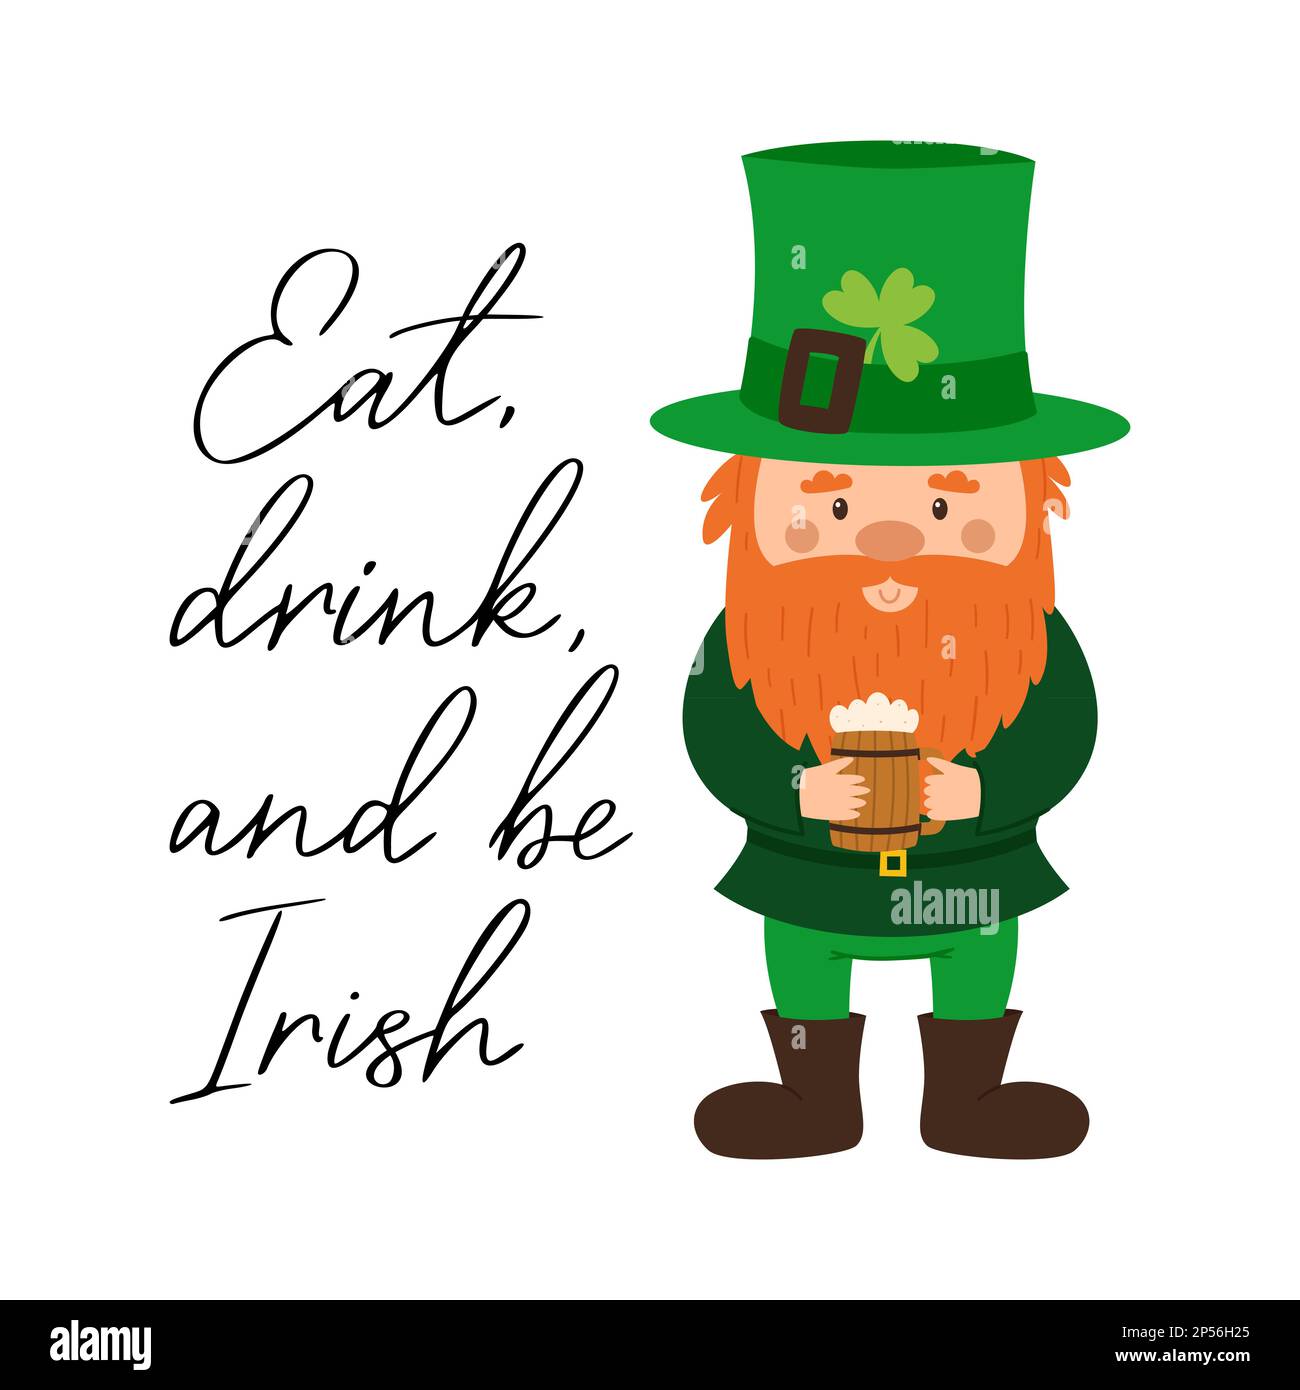 Essen, trinken und Ire sein. Handschrift, handgeschriebener Ausdruck für den St. Patricks Day. Dekoration für irischen Urlaub. Feier des traditionellen Tages in Irel Stock Vektor